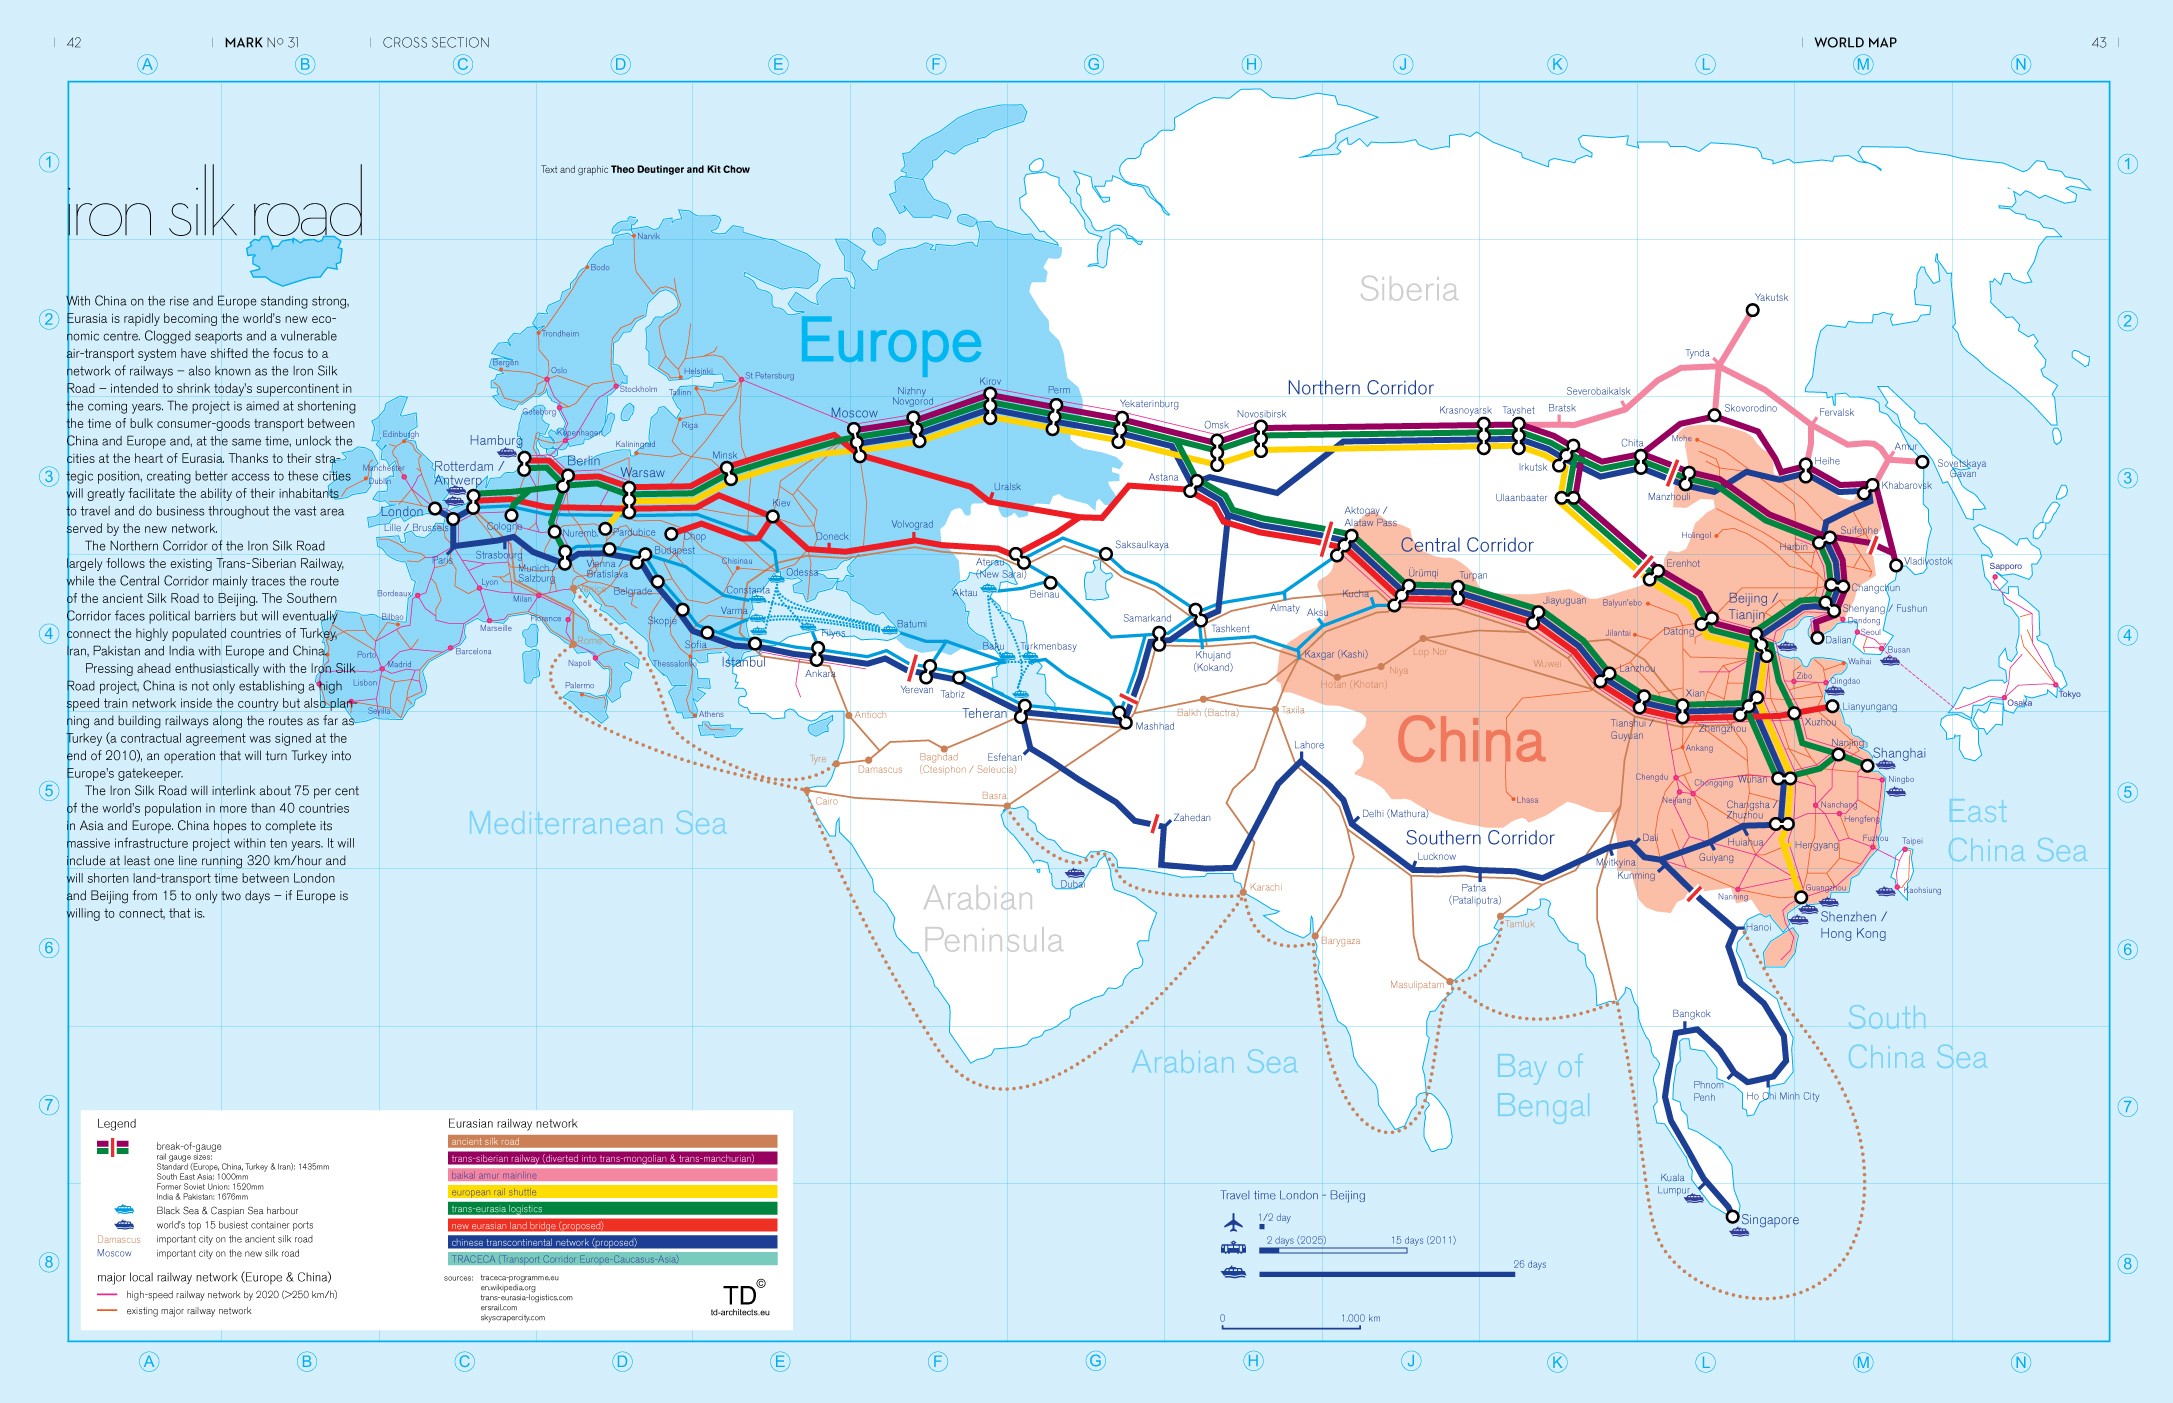 借由中国特有的高速铁路交通技术,连通亚欧大陆,促进该条"新丝绸之路